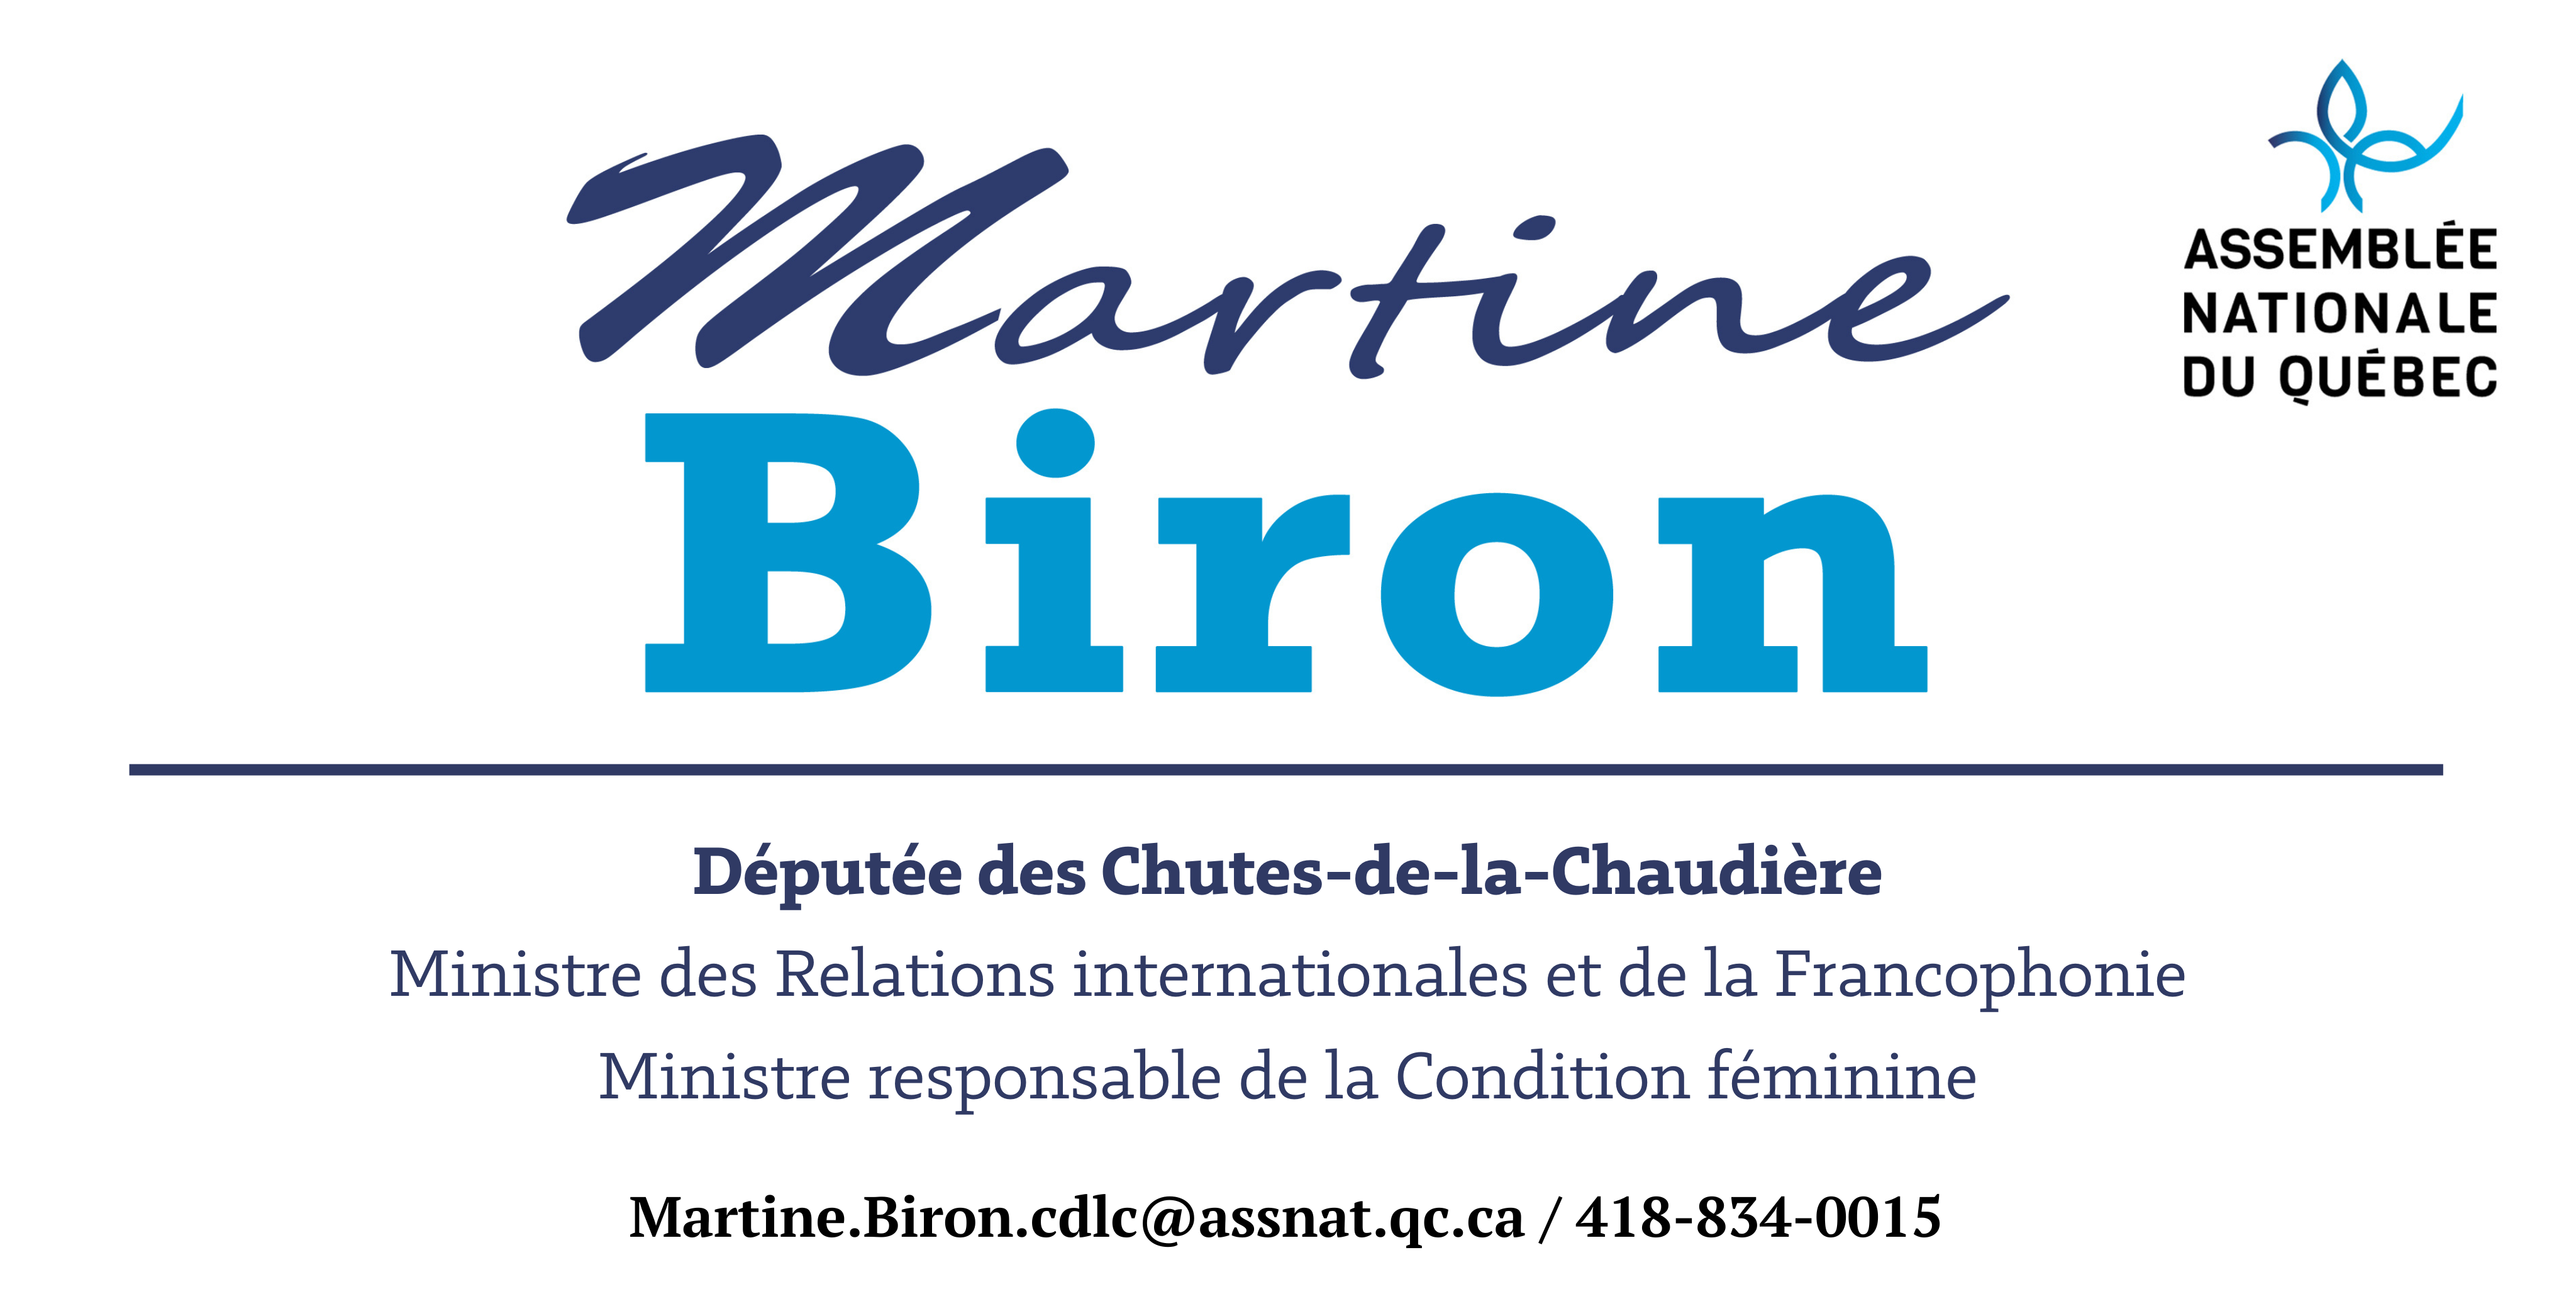 Martine Biron